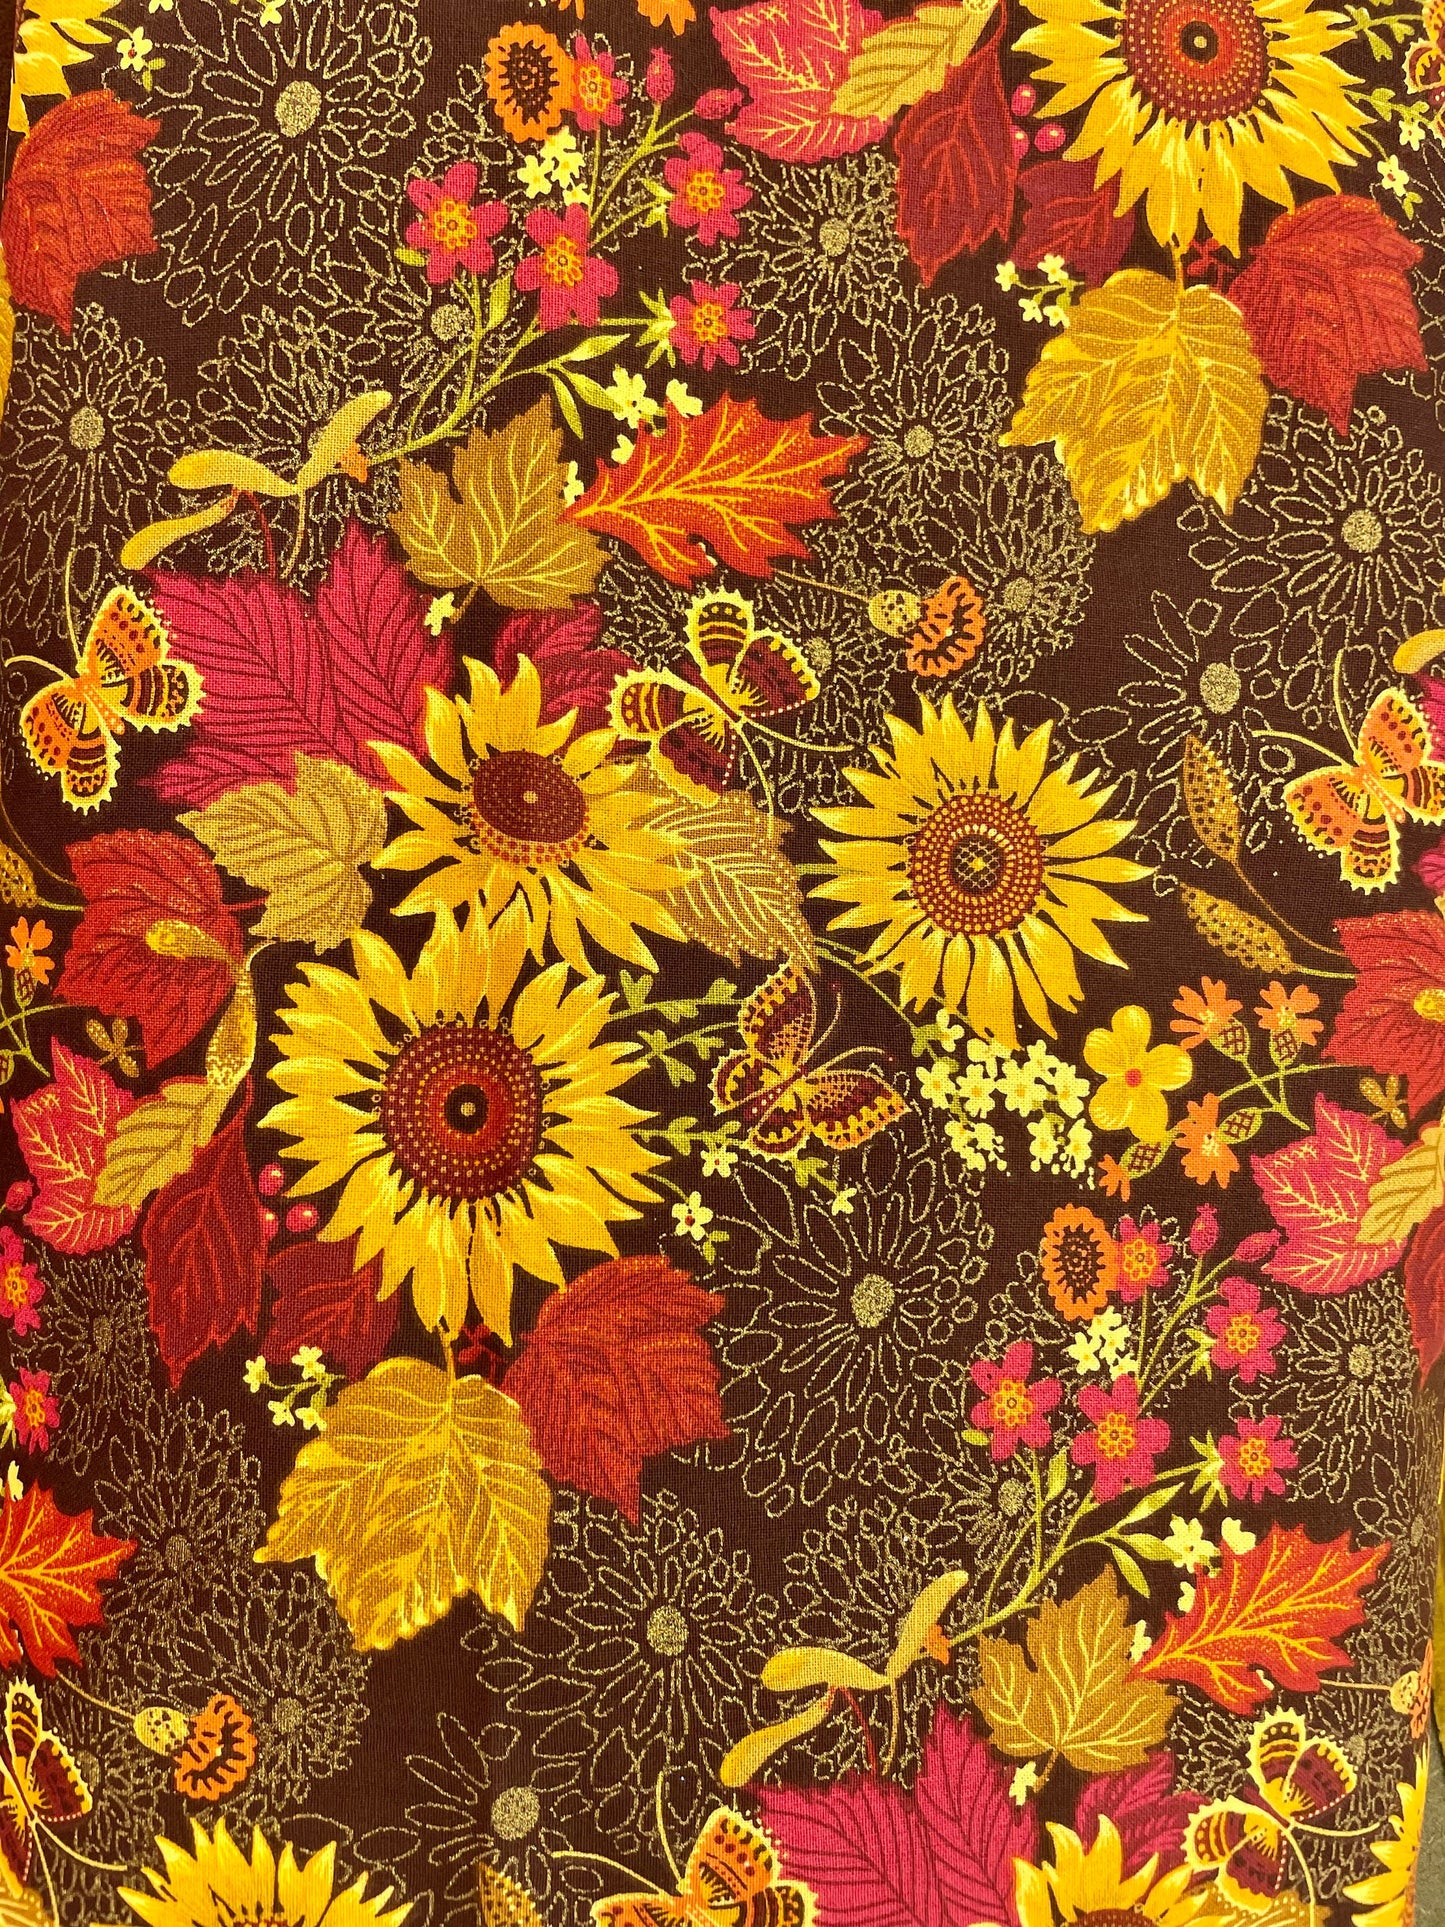 Beautiful fall designer reversible blanket